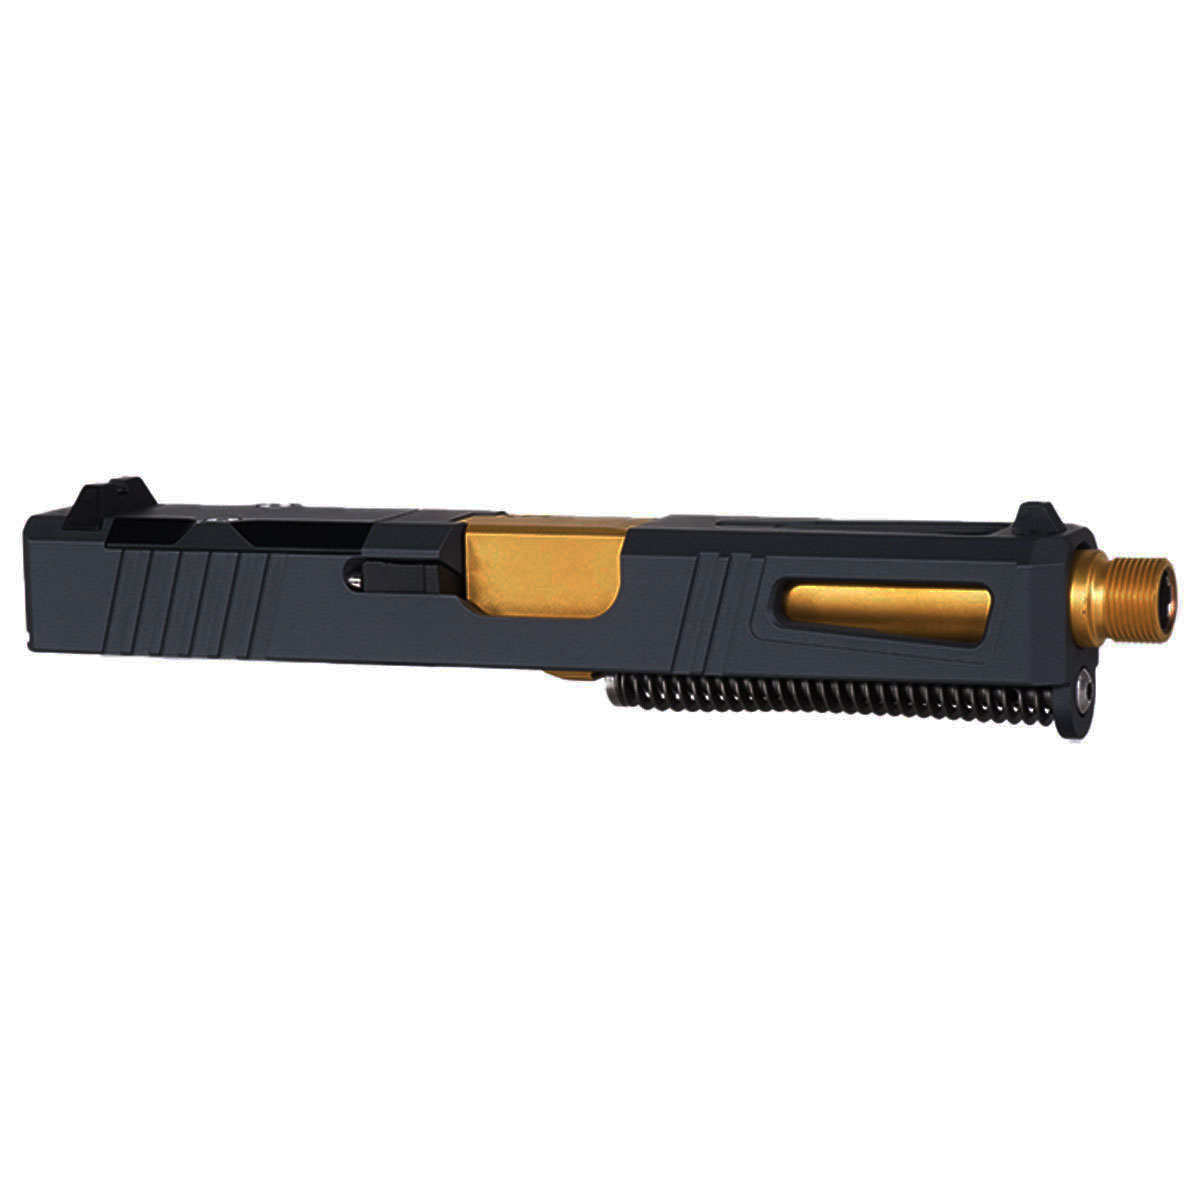 OTD 'Hermes' 9mm Complete Slide Kit - Glock 19 Gen 1-3 Compatible